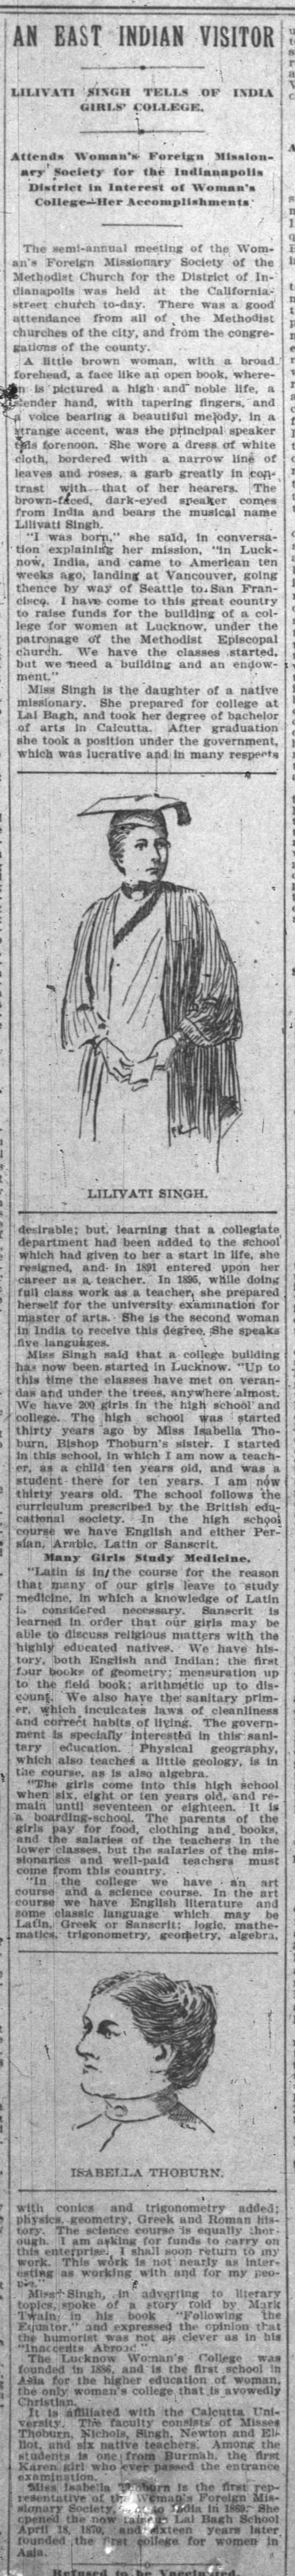 Lilivati Singh in Indianapolis (1899) - 